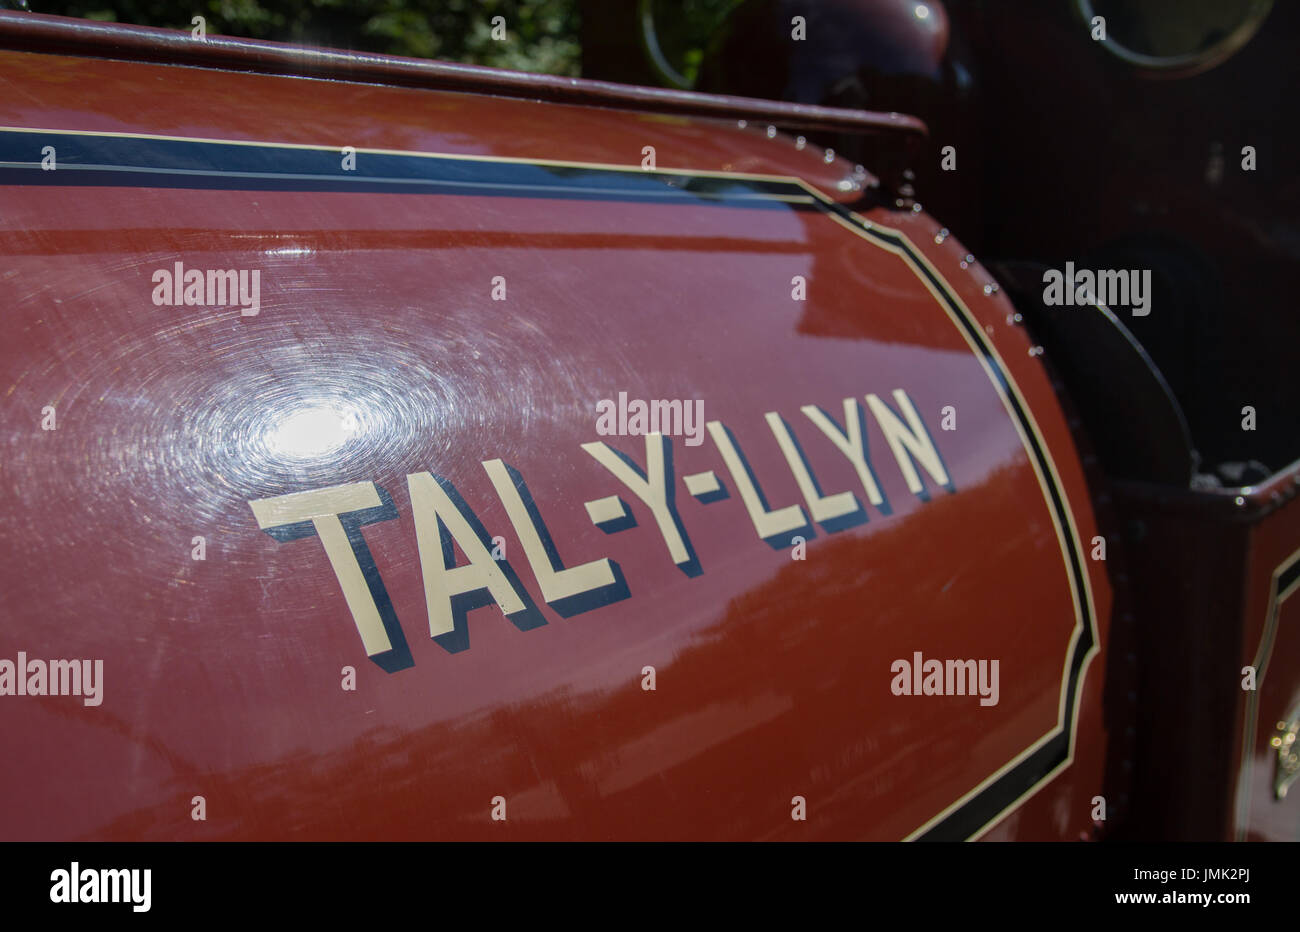 Talyllyn Railway sillín locomotora de vapor del depósito denominado tal-y-llyn en el sol Foto de stock